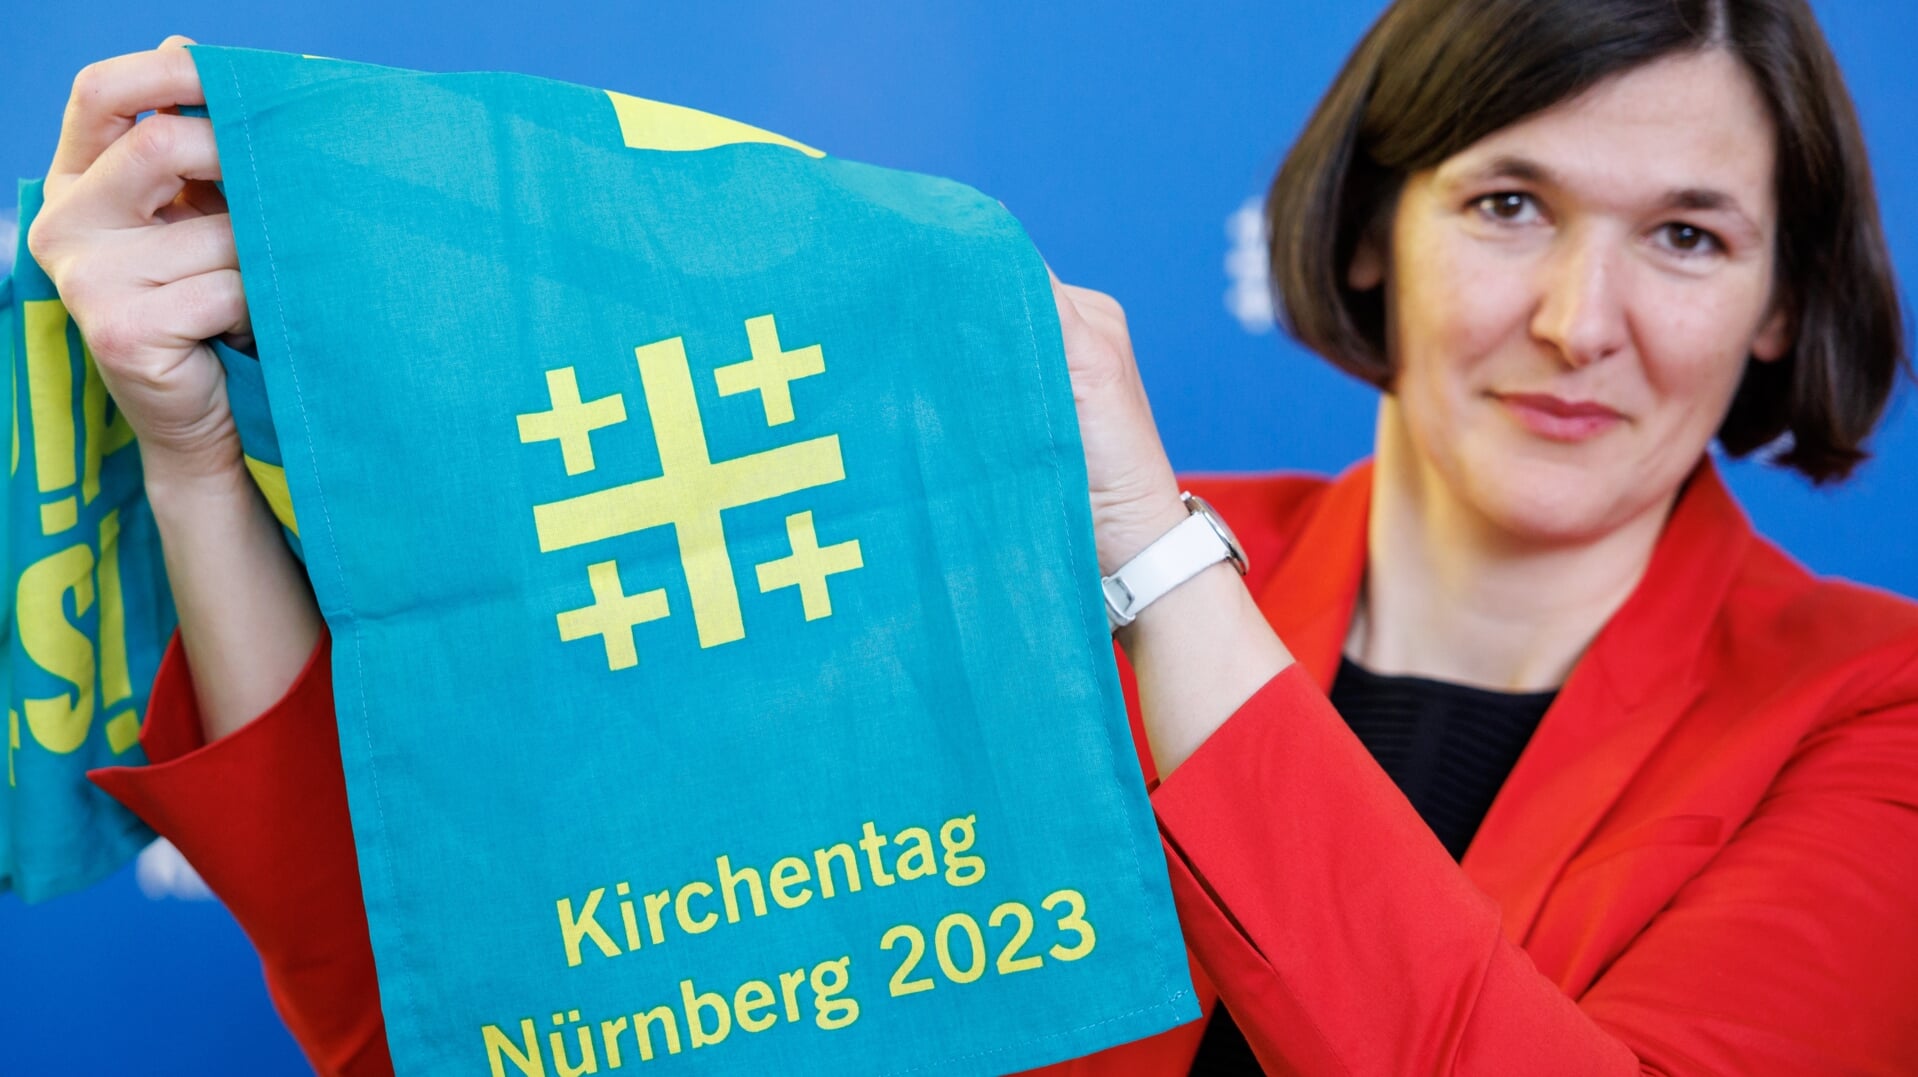 Algemeen-secretaris Kristin Jahn van de Kirchentag presenteert het programma voor de editie-2023.